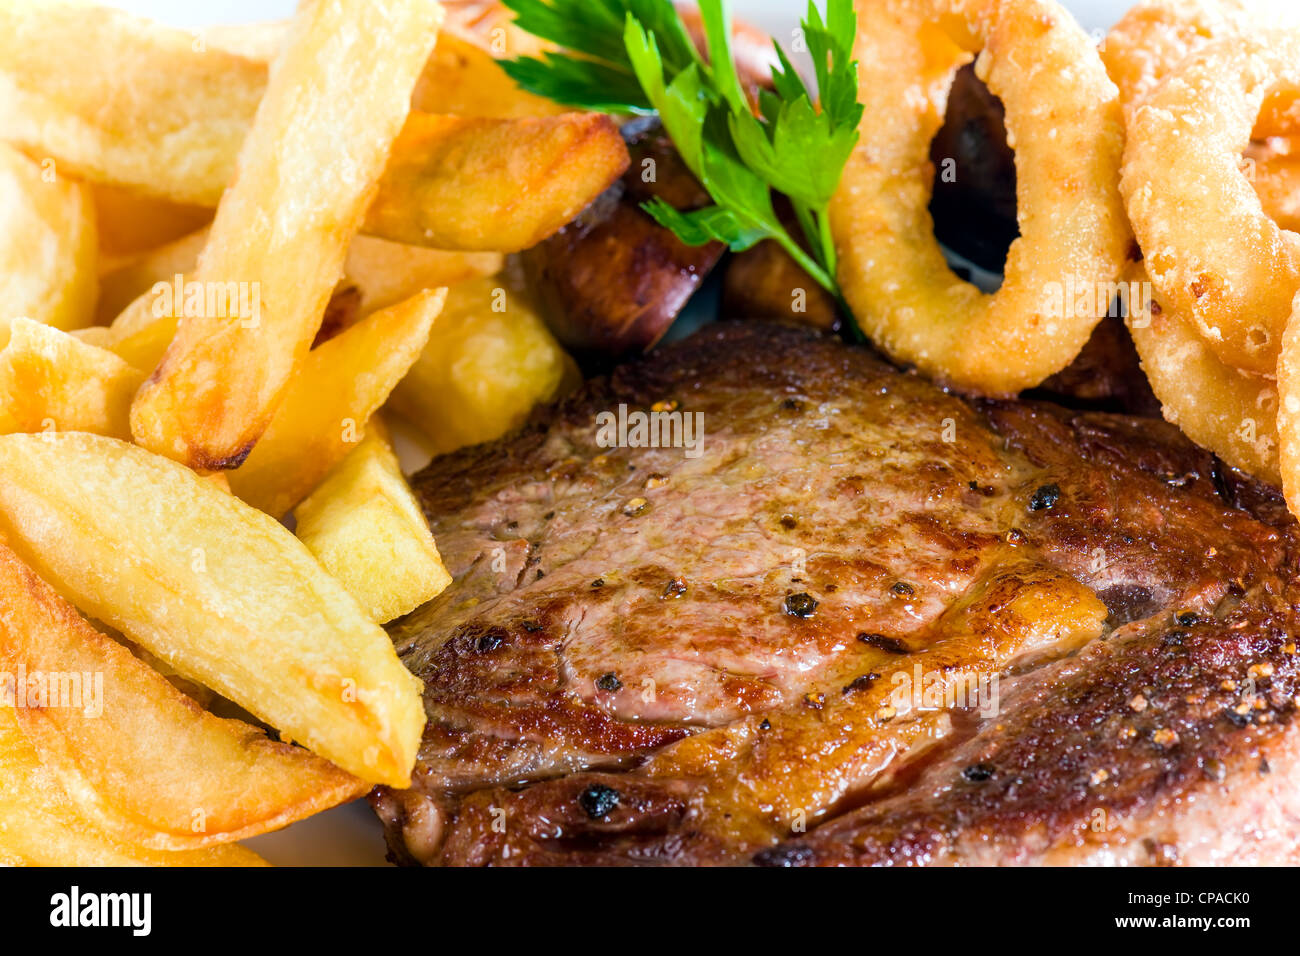 Kochs Präsentation Gericht - Steak und Pommes frites Stockfoto